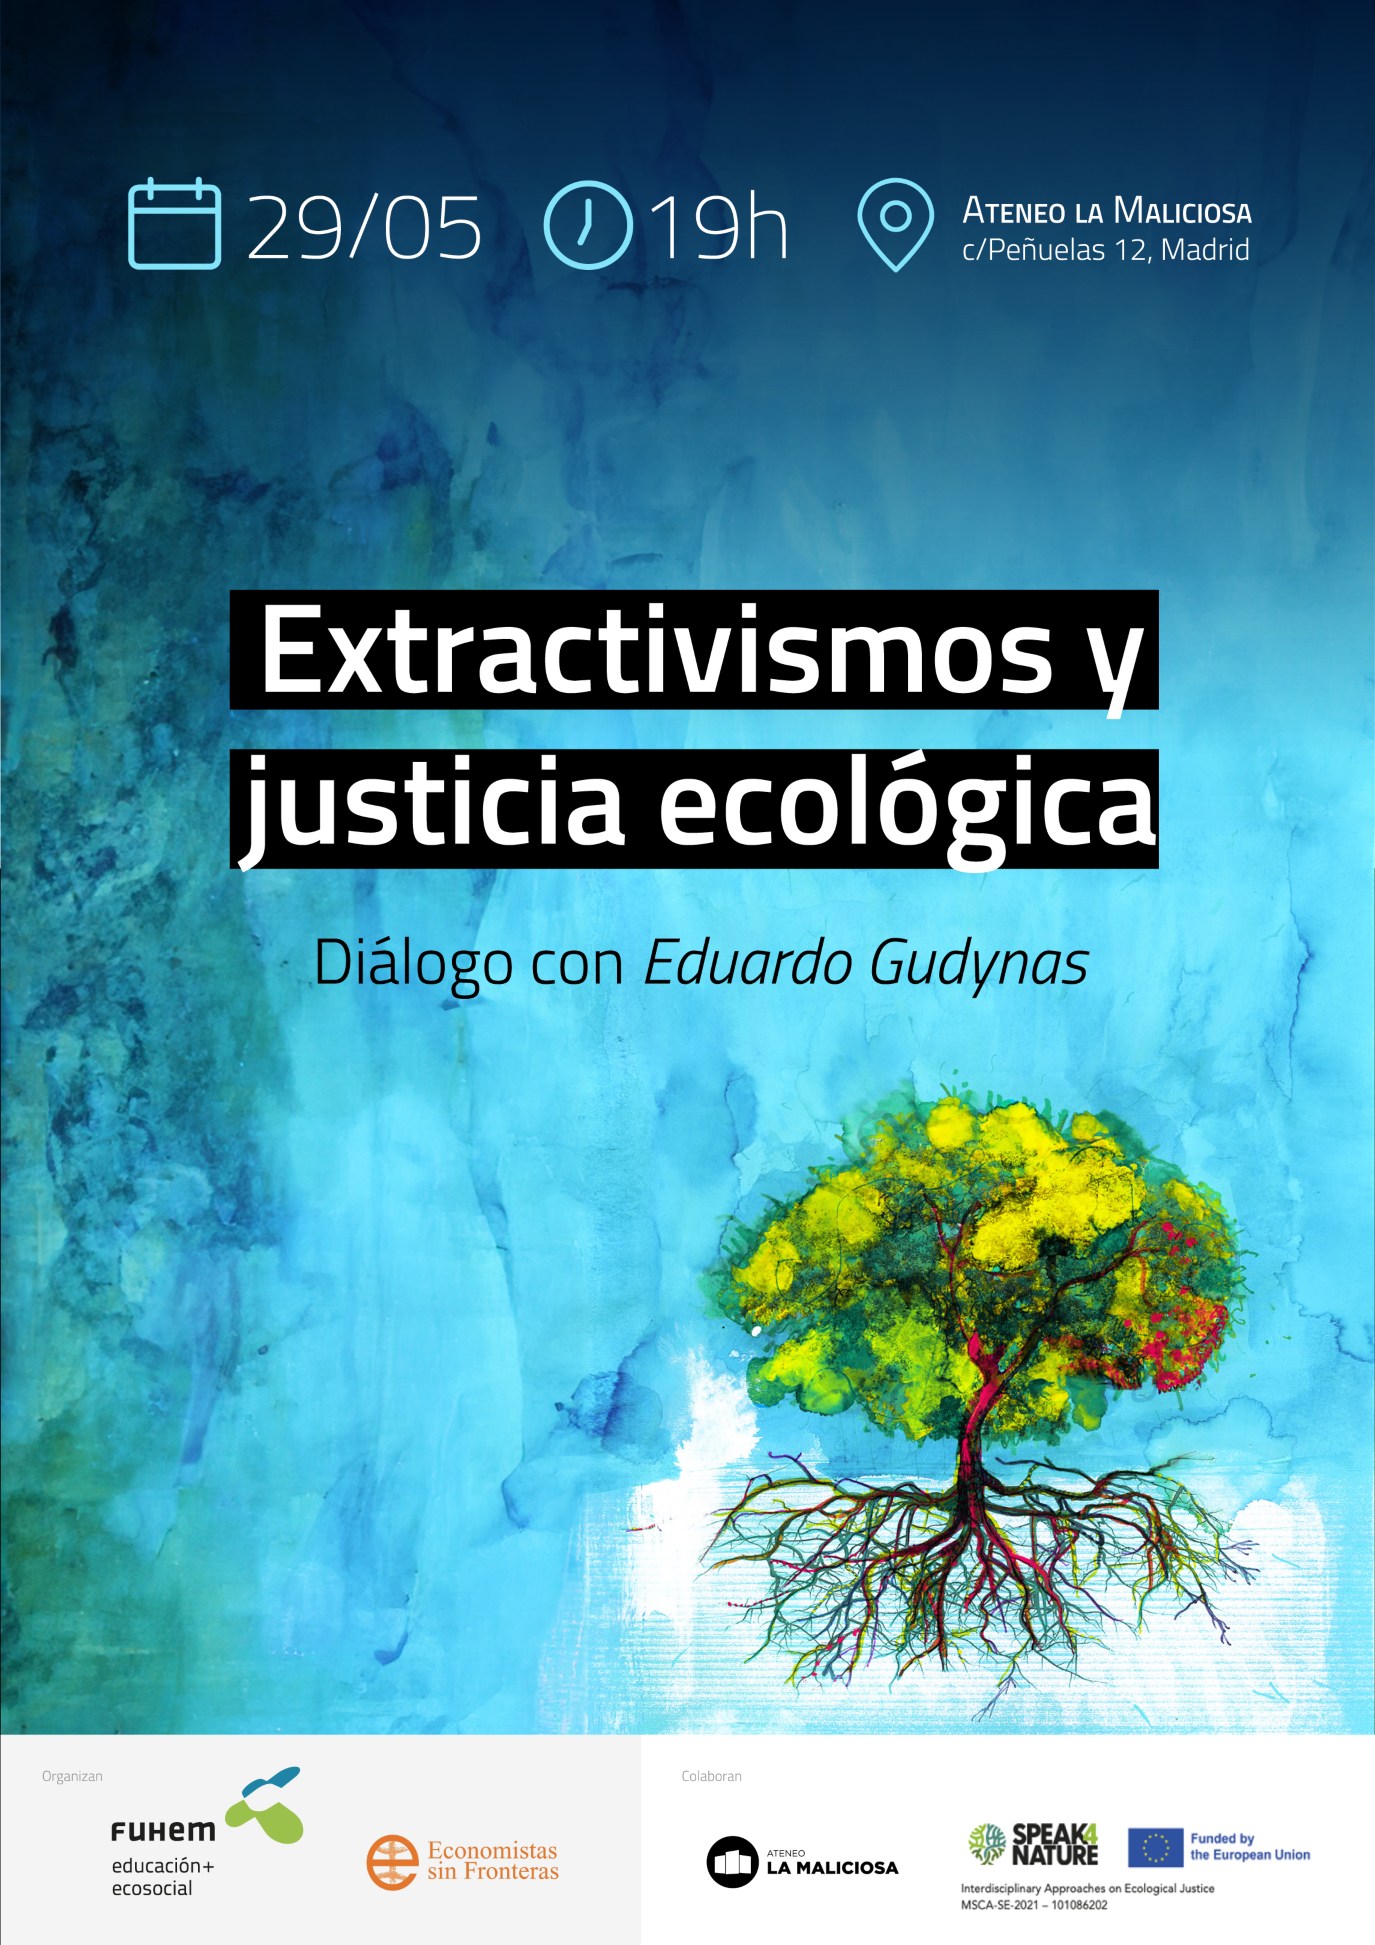 Extractivismos y justicia ecológica. Diálogo con Eduardo Gudynas.